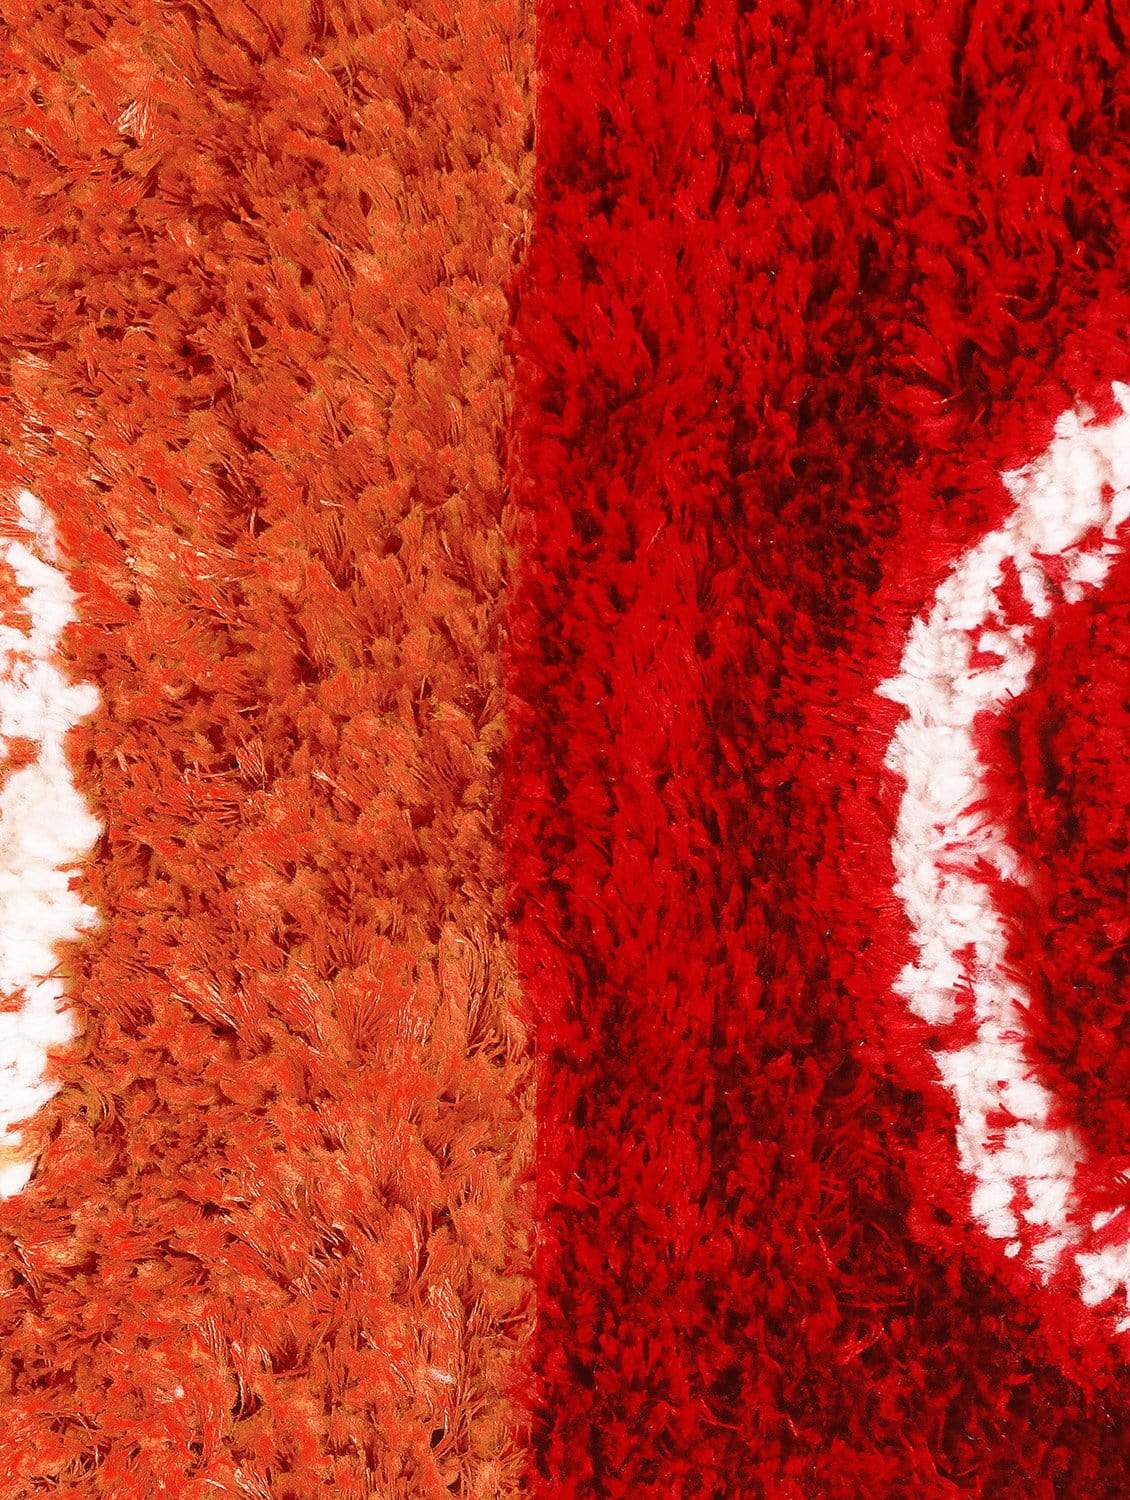 Runner Circle Red & Orange Carpet